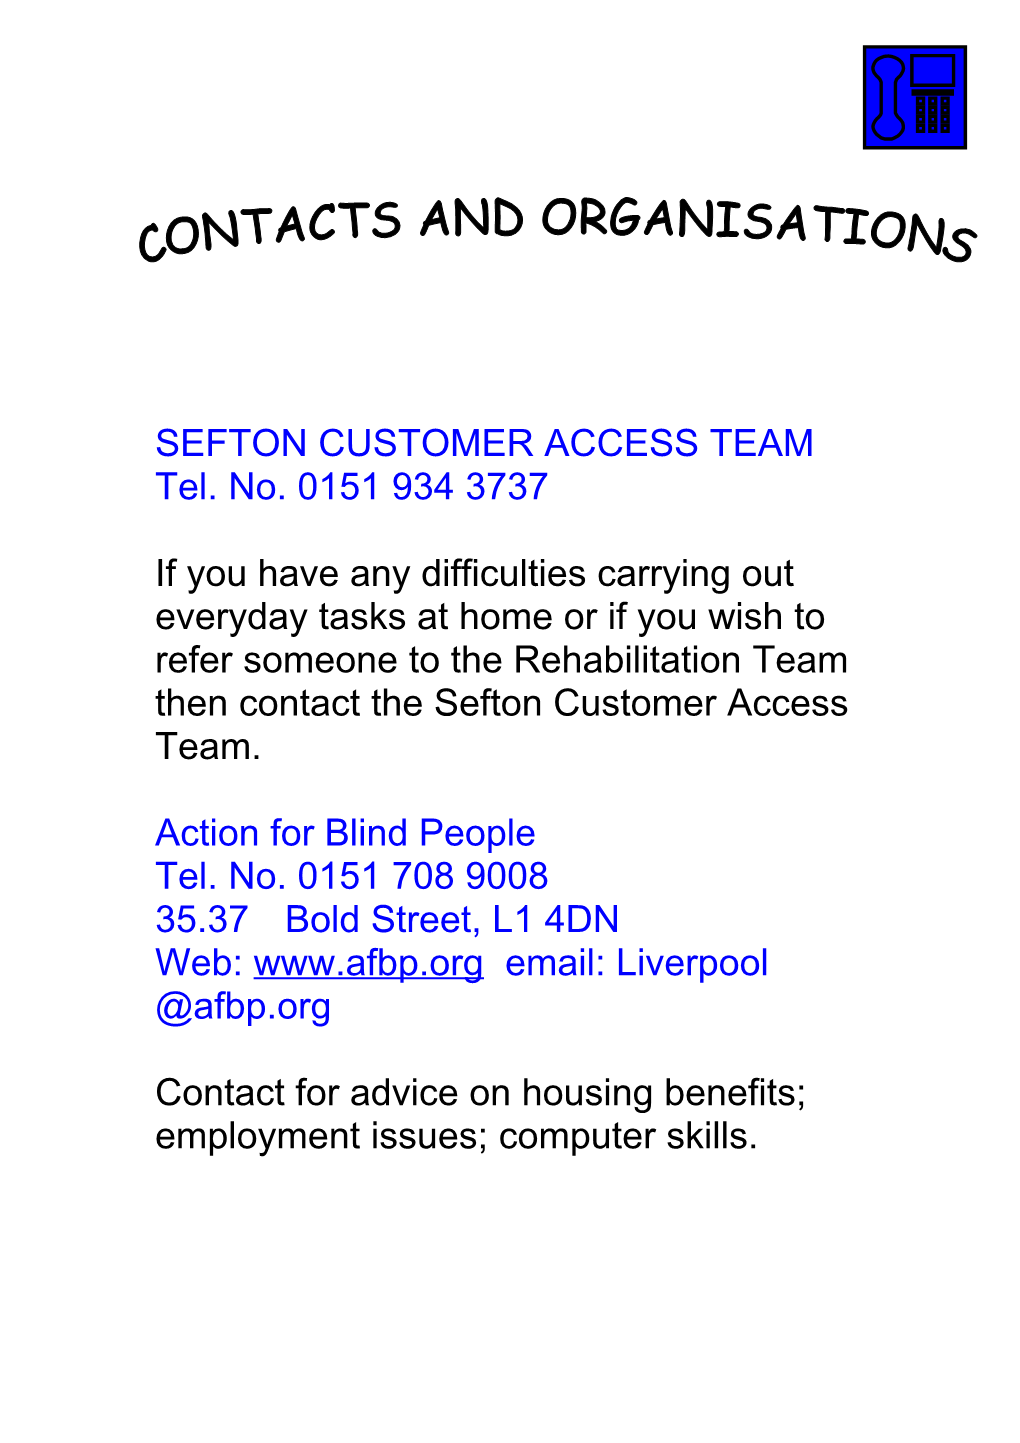 Sefton Customer Access Team